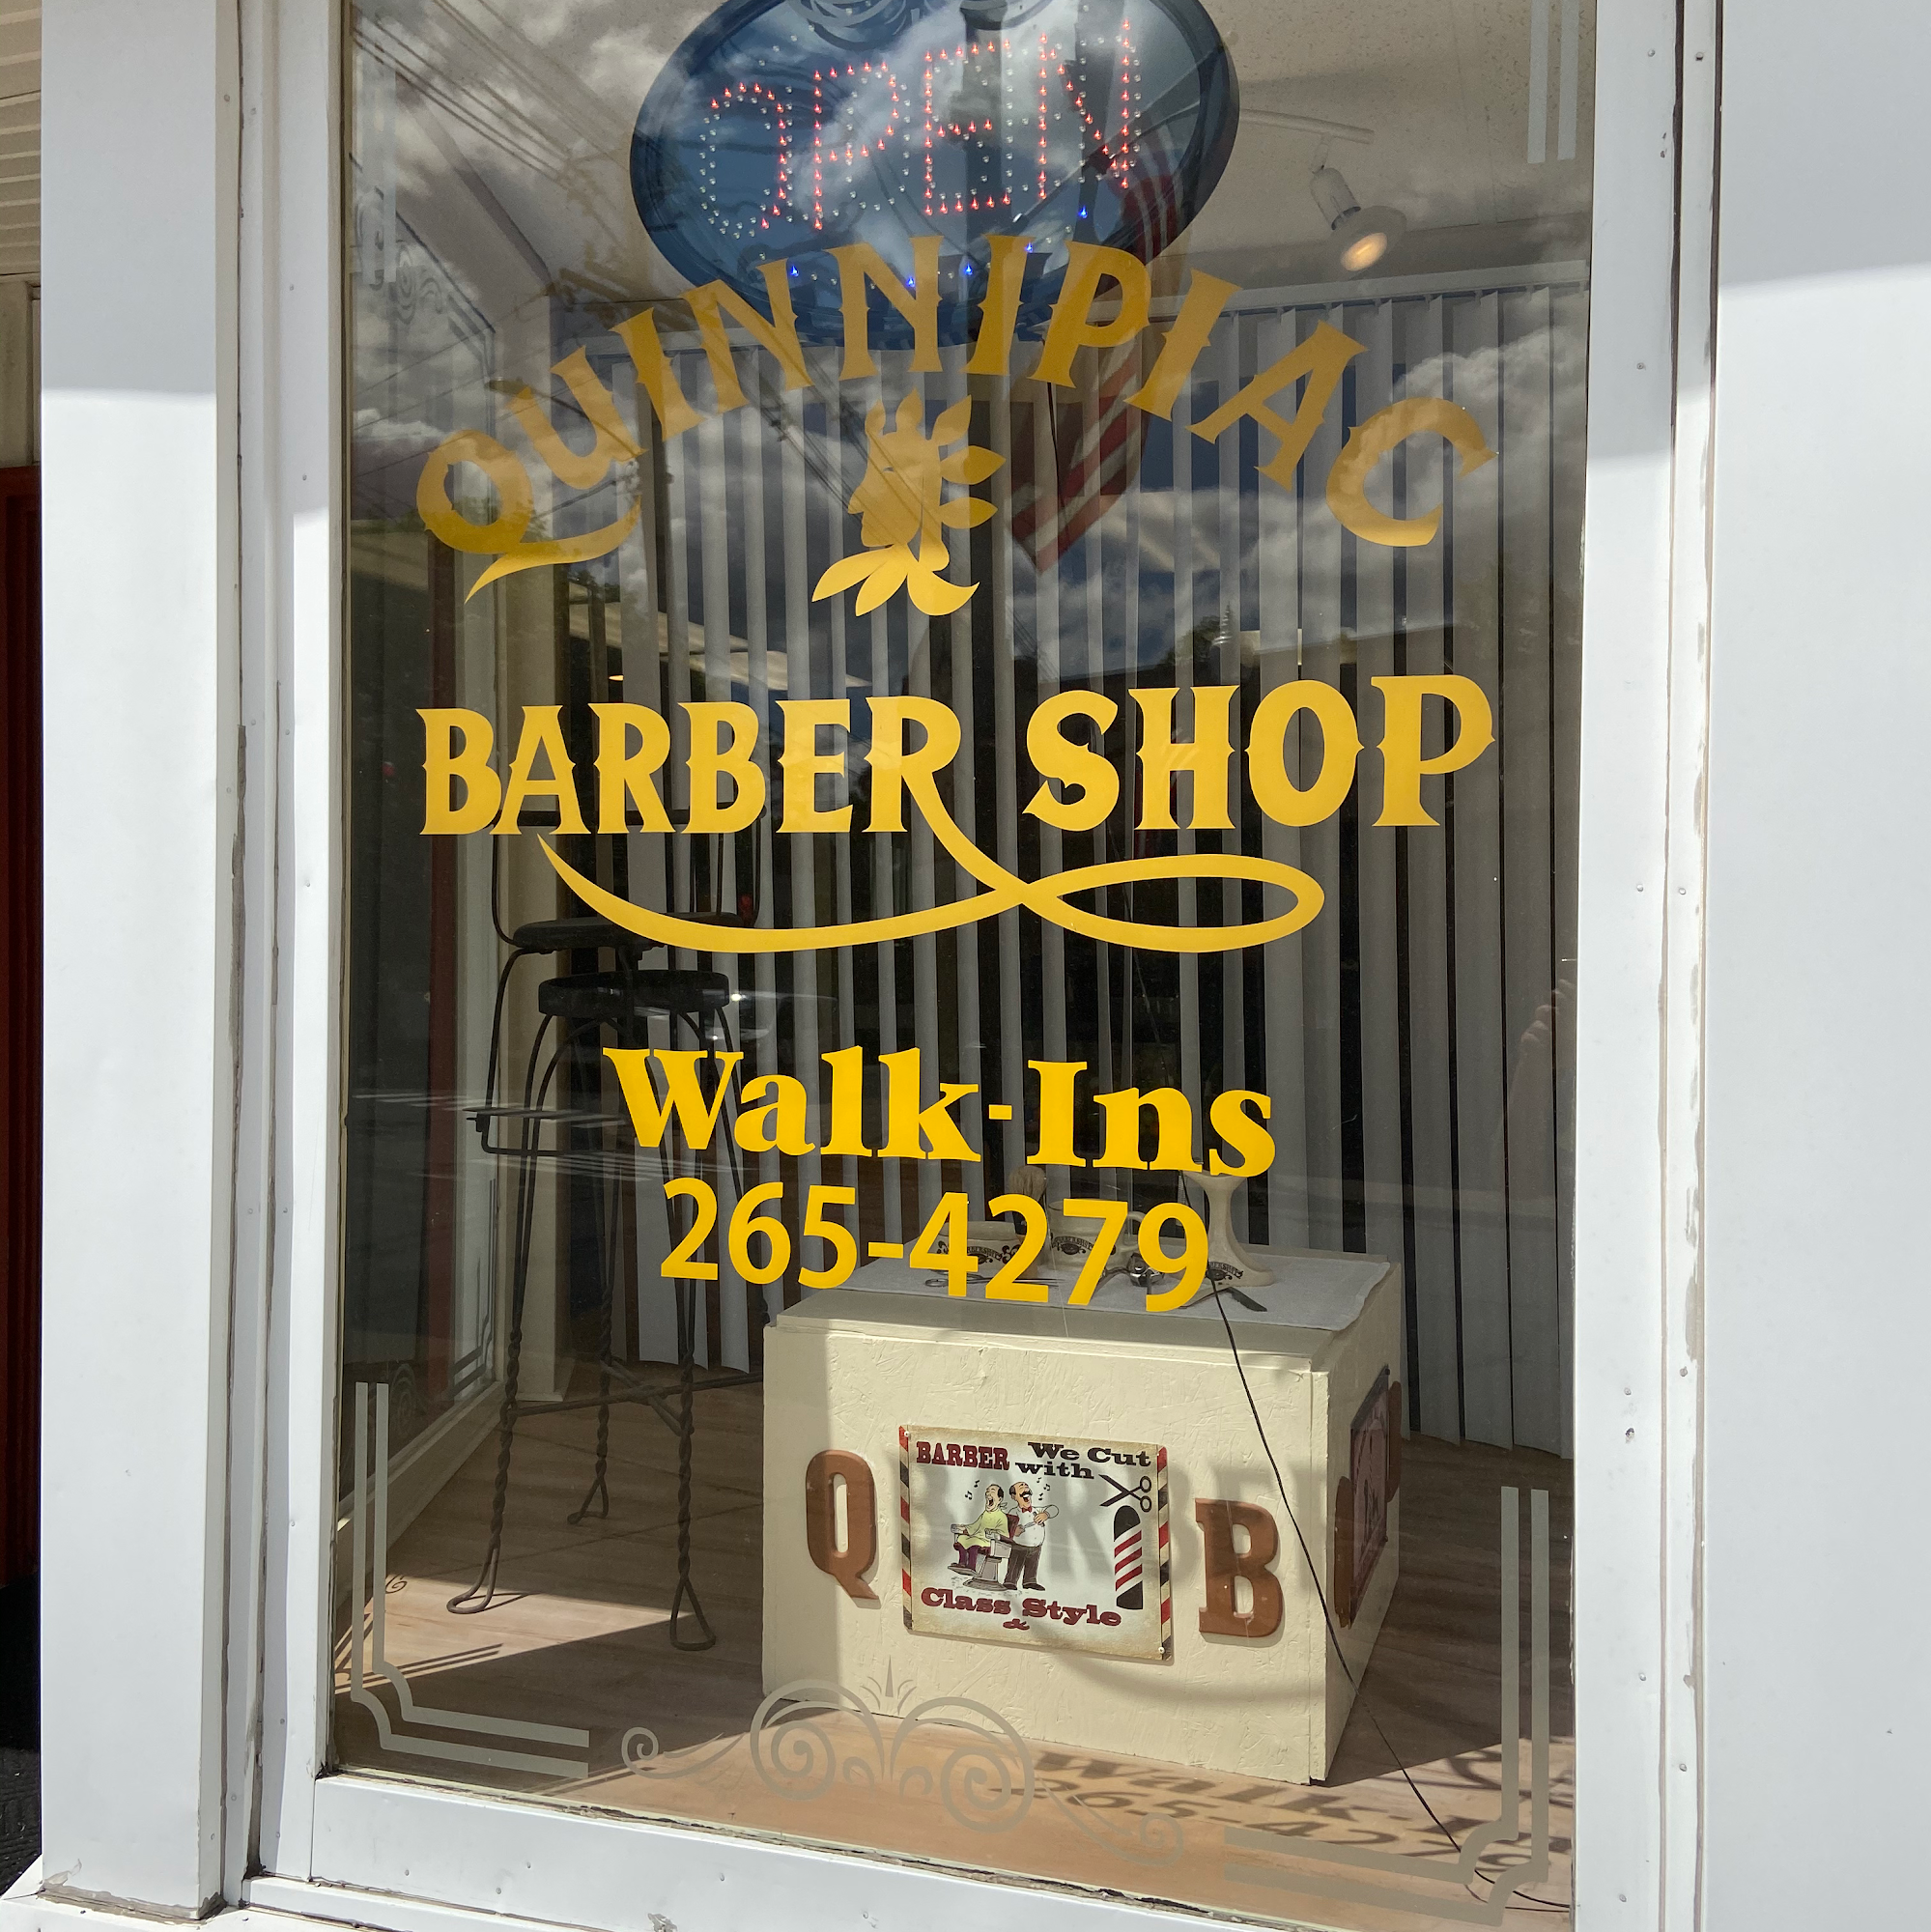 Quinnipiac Barber Shop